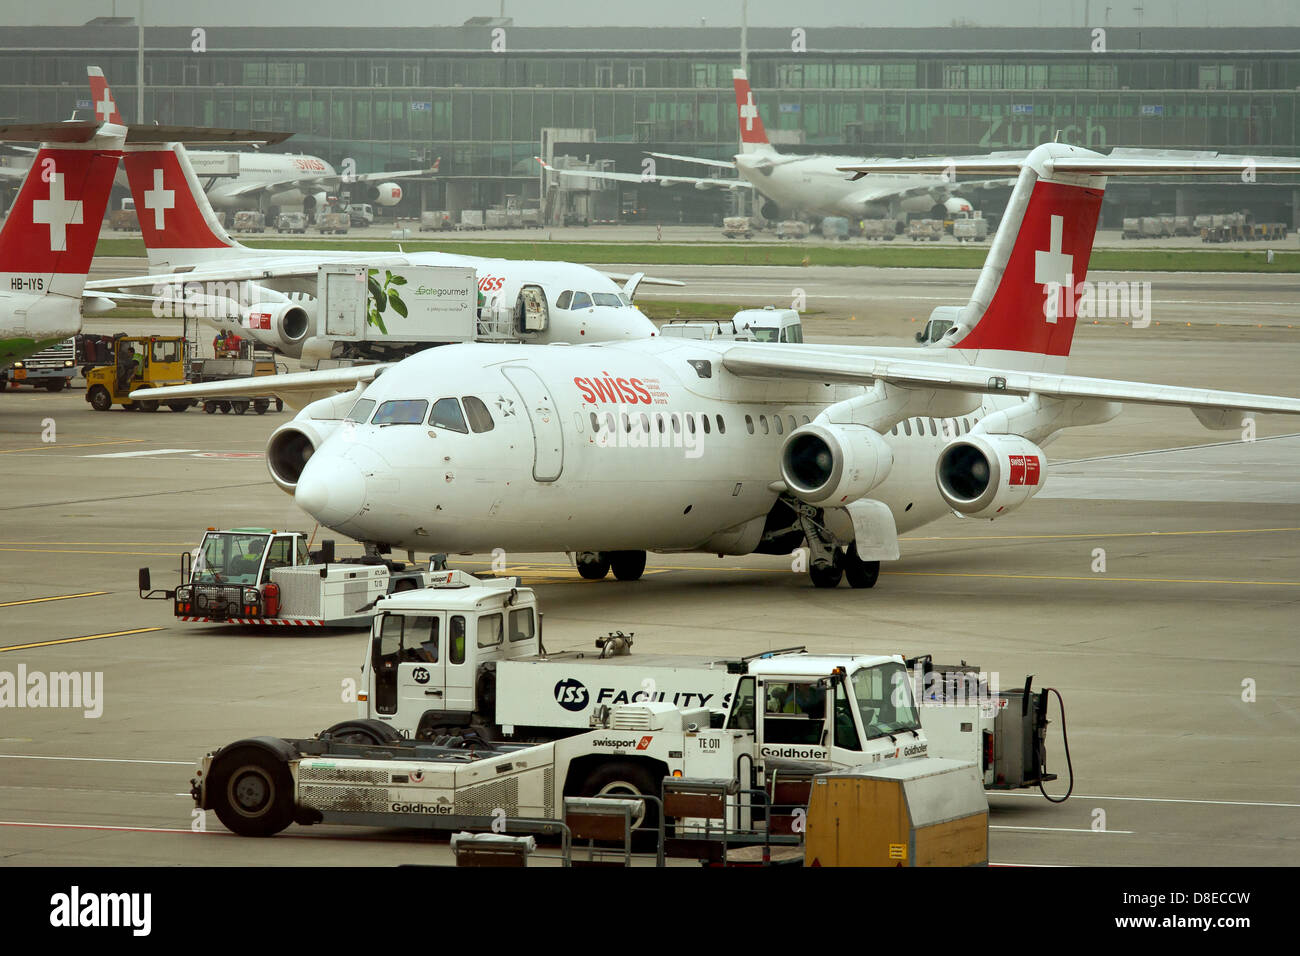 Zurich, Switzerland, SWISS aircraft at Zurich airport Stock Photo - Alamy